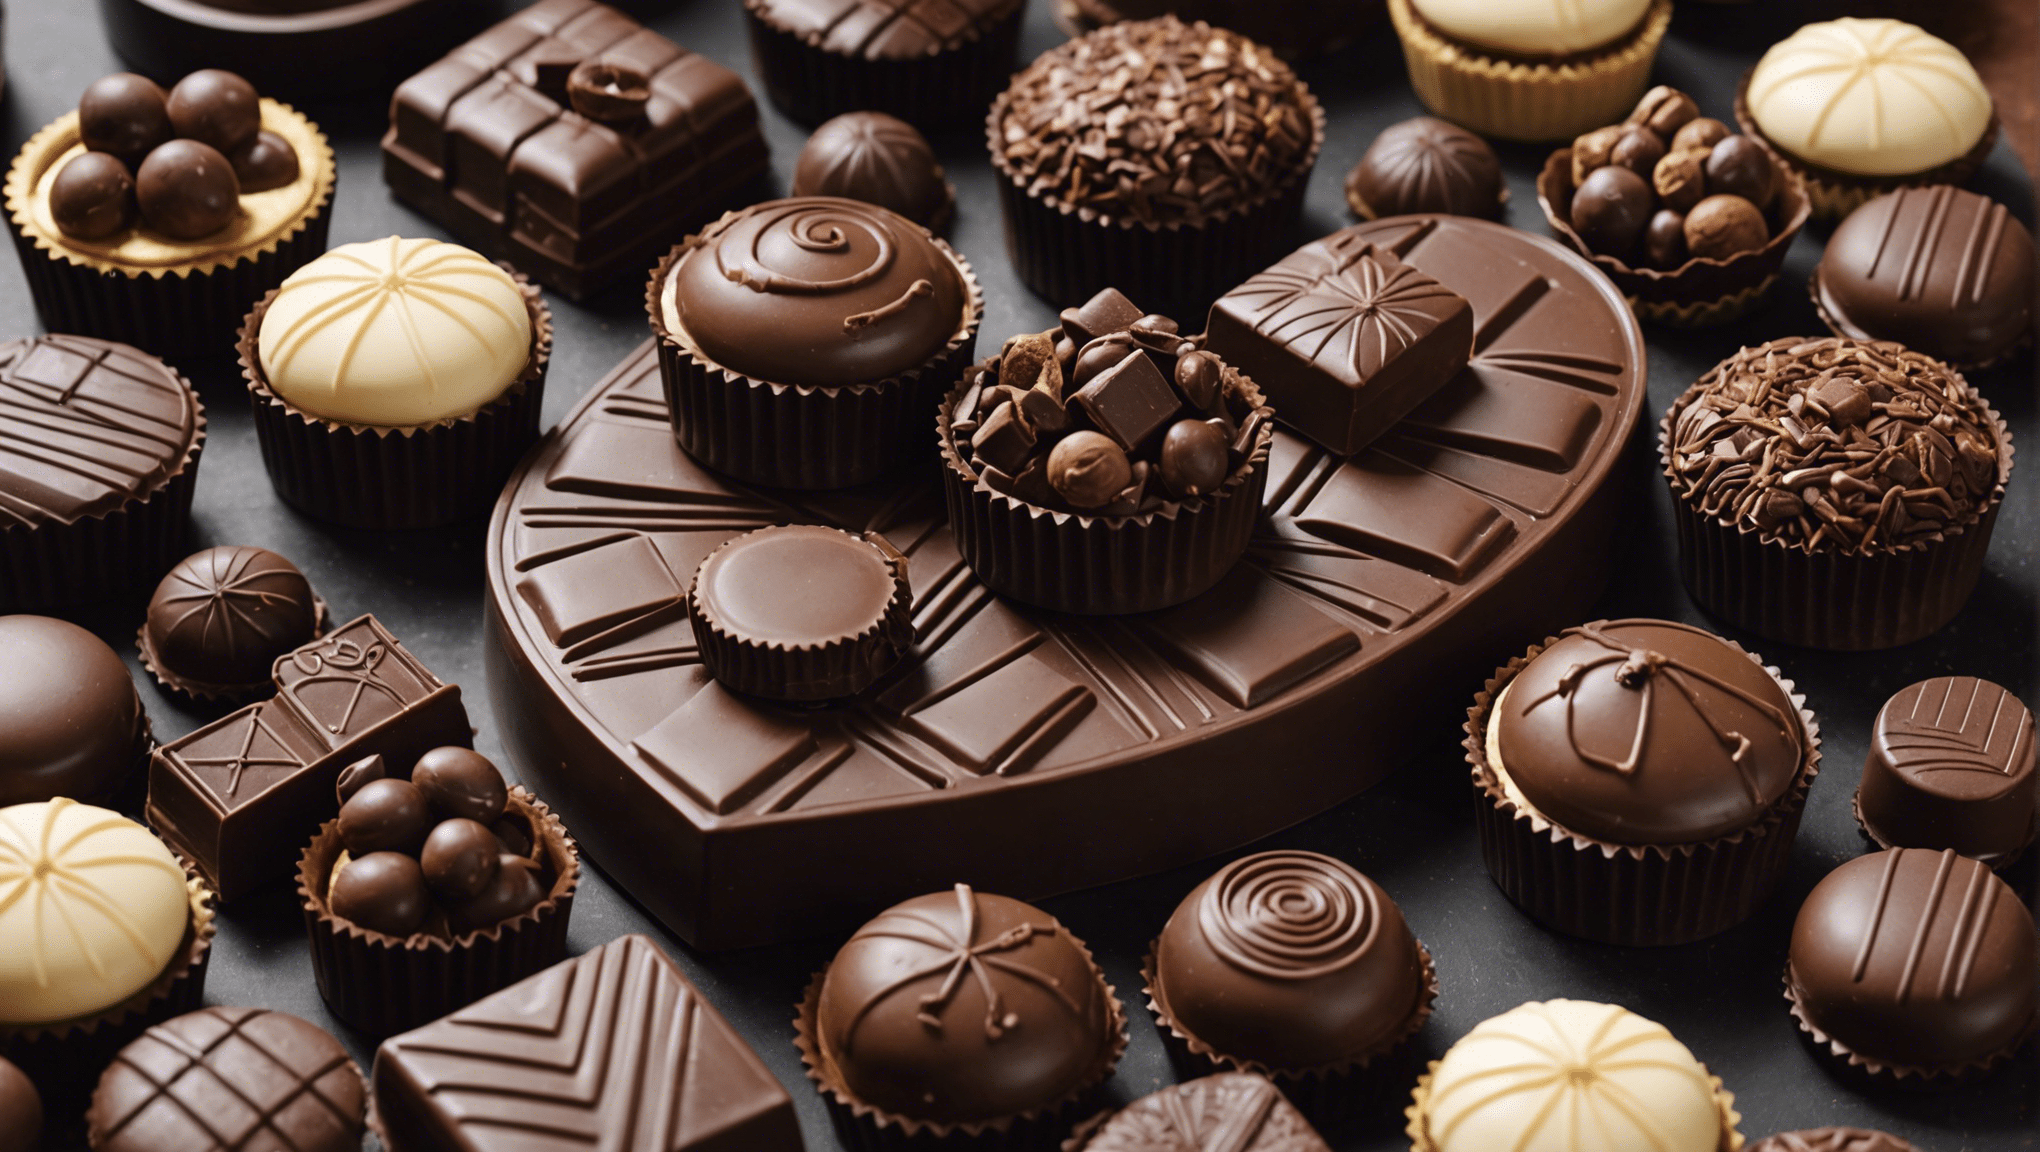 découvrez des conseils pour apprécier pleinement les plaisirs du chocolat et profiter au maximum de ses saveurs exquises.